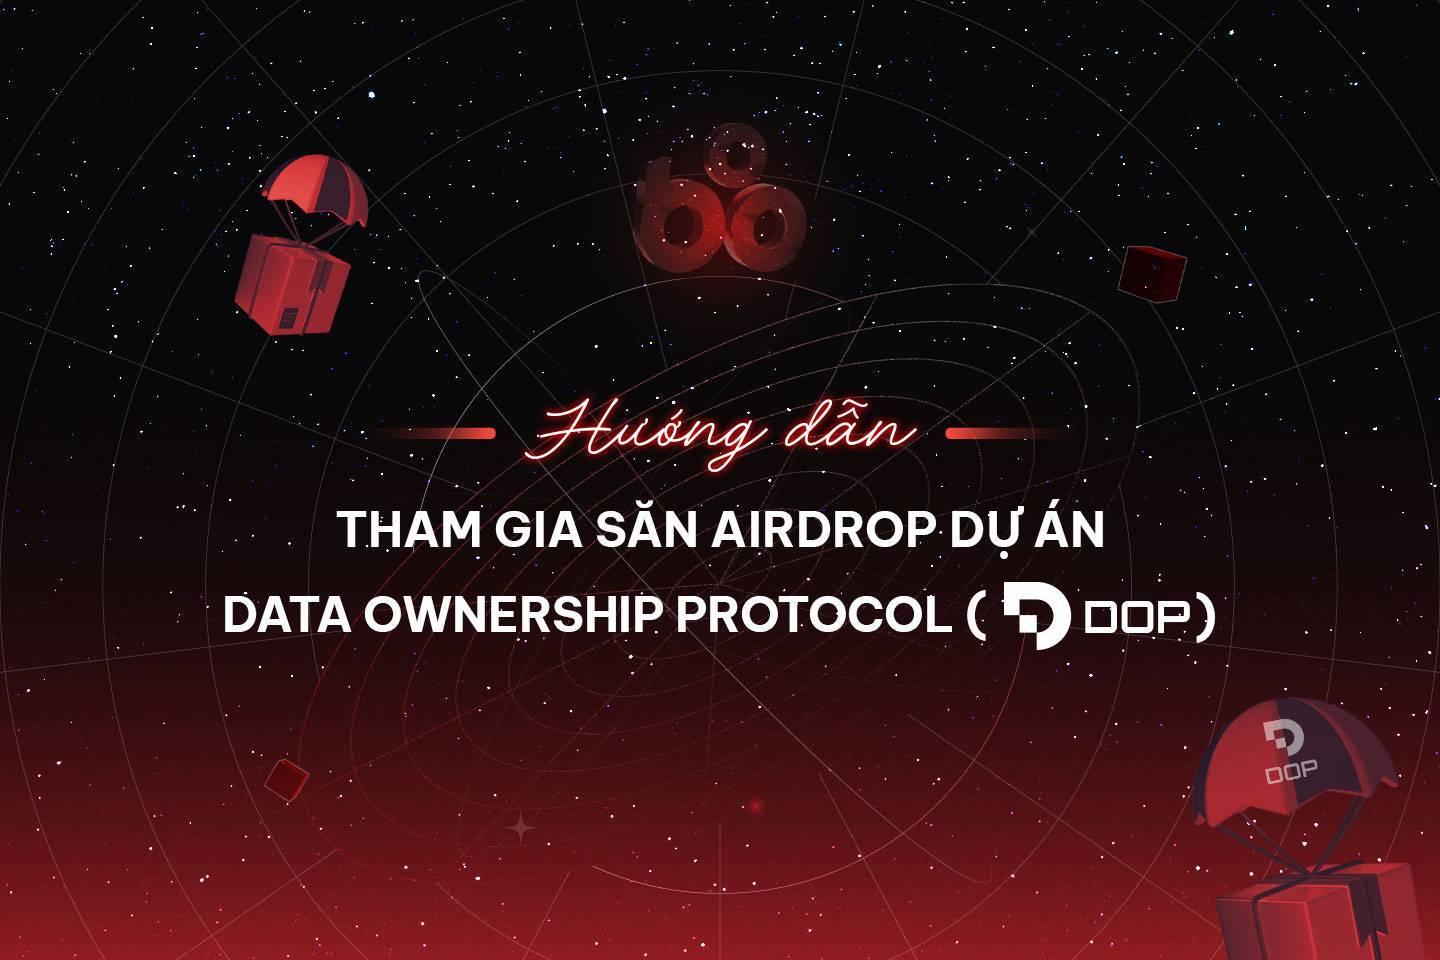 huong-dan-tham-gia-san-airdrop-du-an-data-ownership-protocol-dop